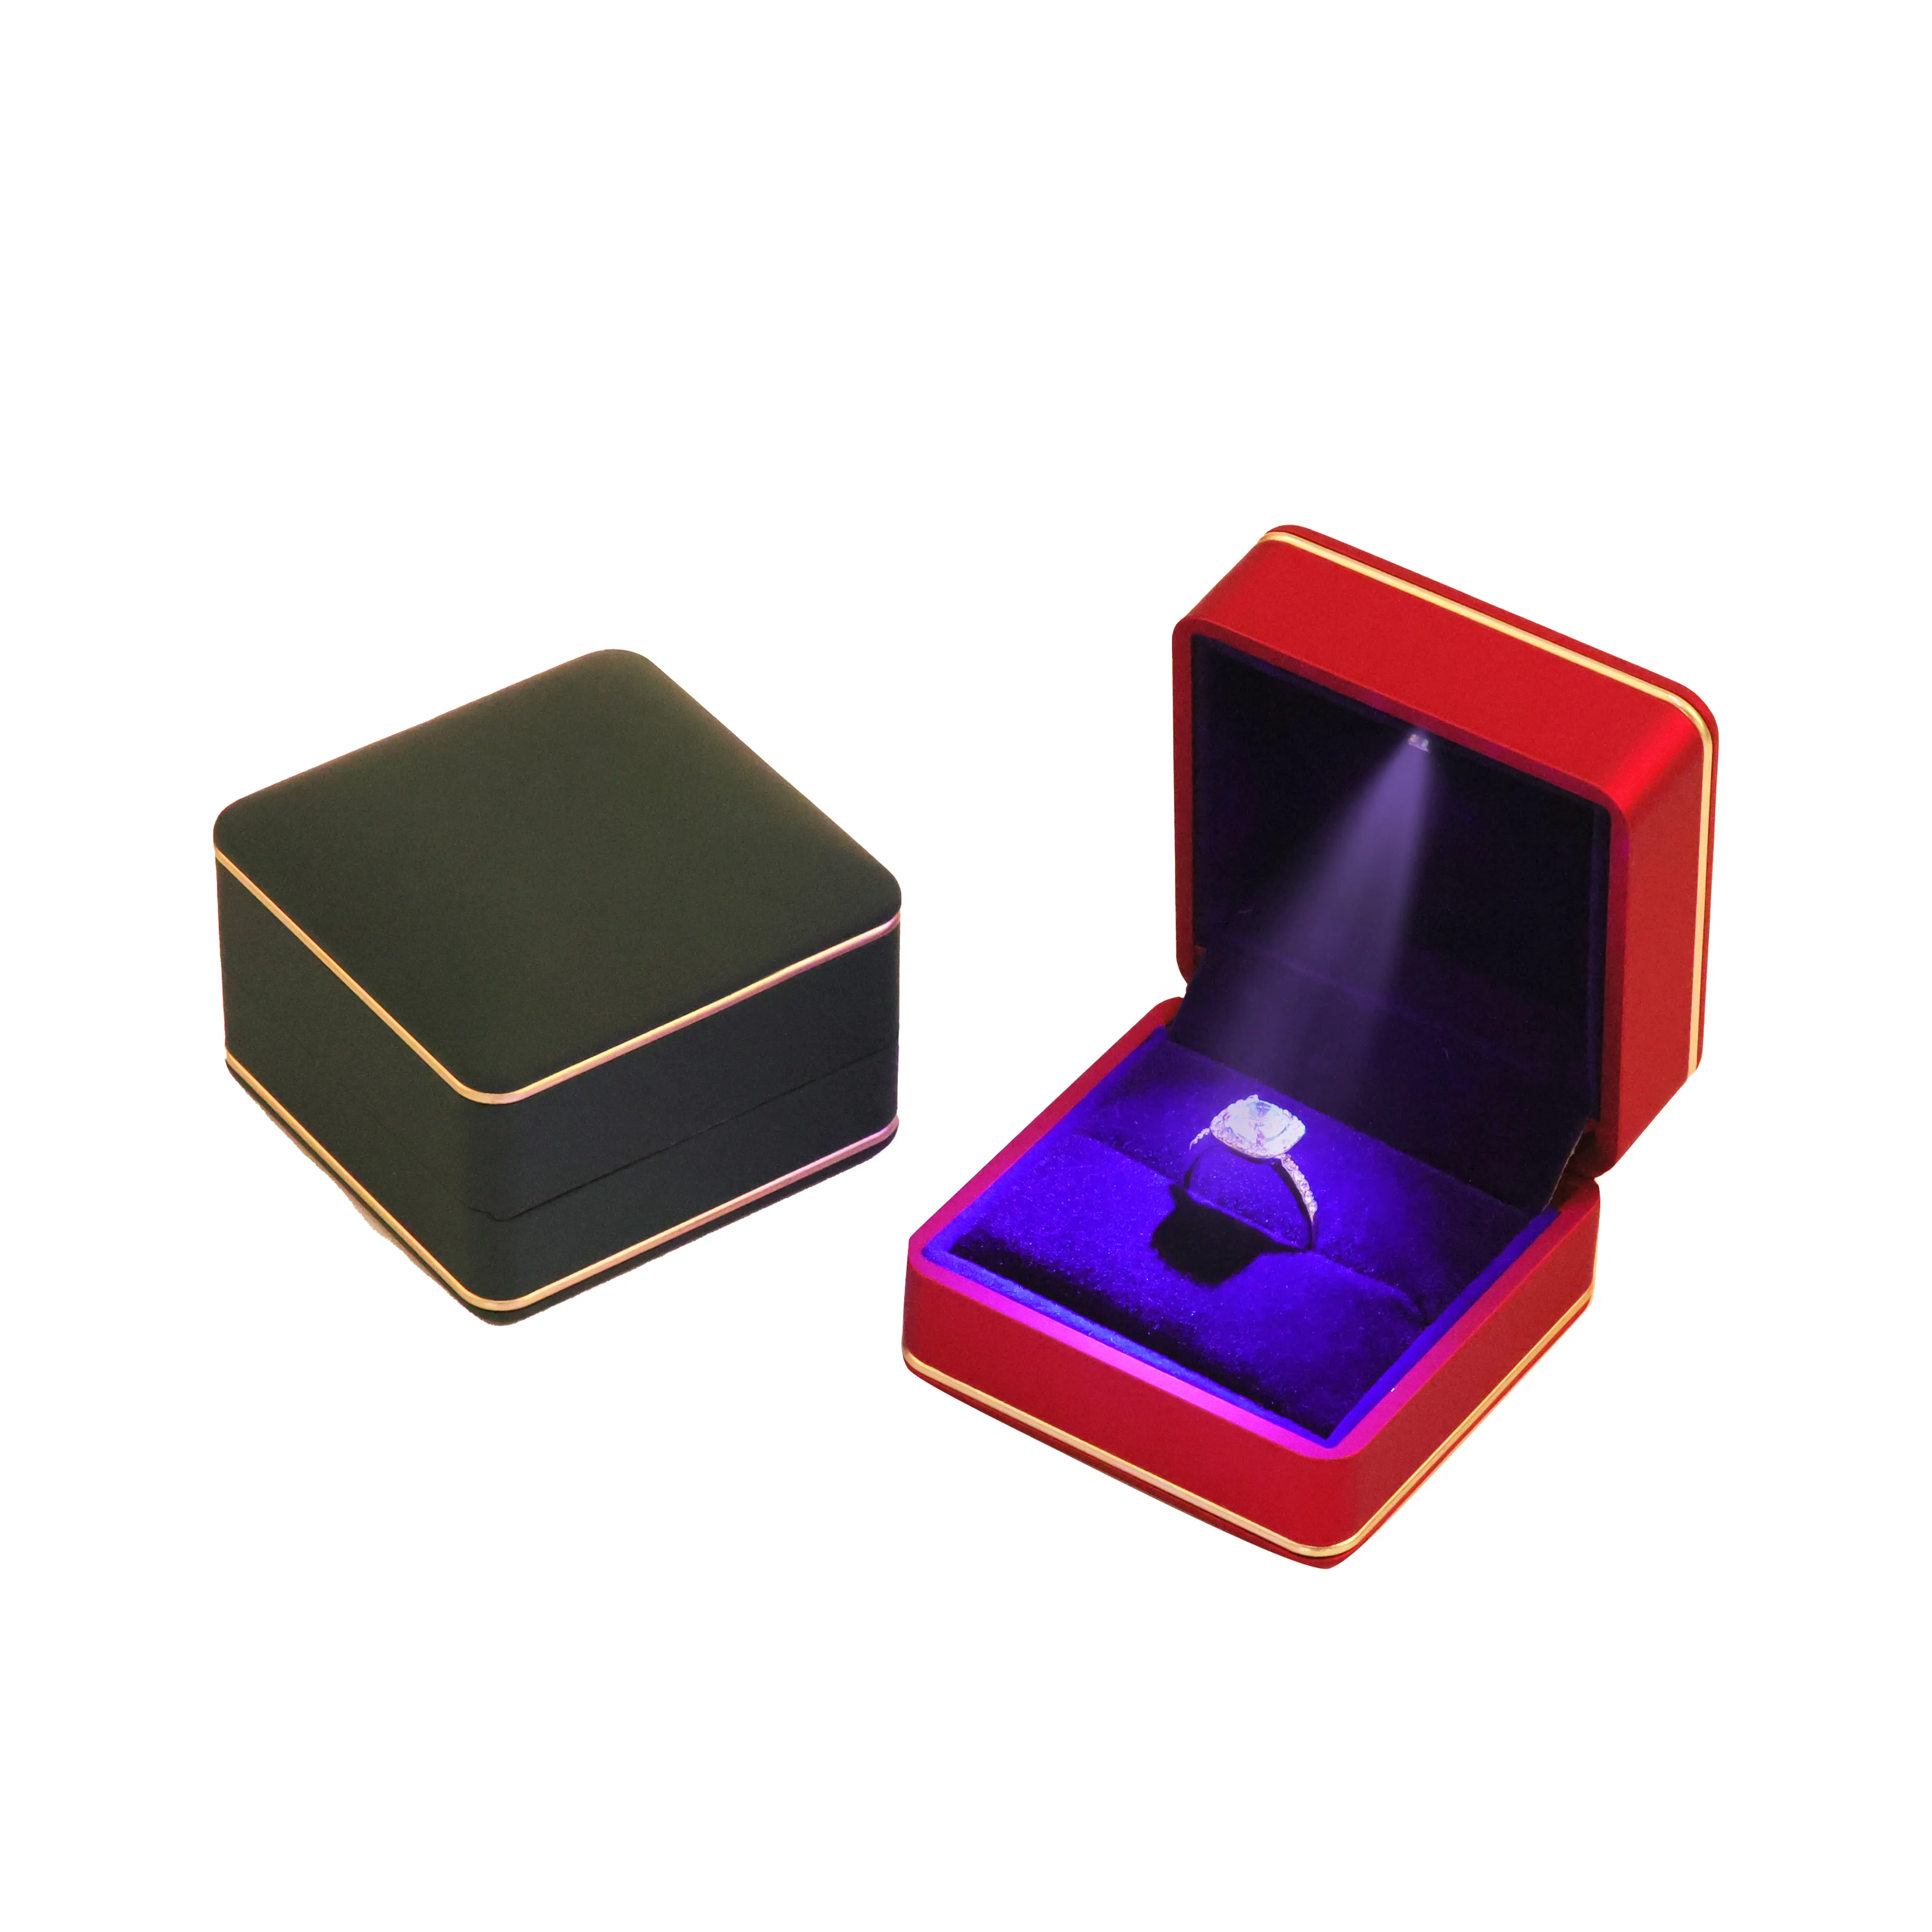 Lüks LED halka kutusu mücevher hediye ambalaj romantik nişan yüzüğü durumda Led mücevher kutusu ışık